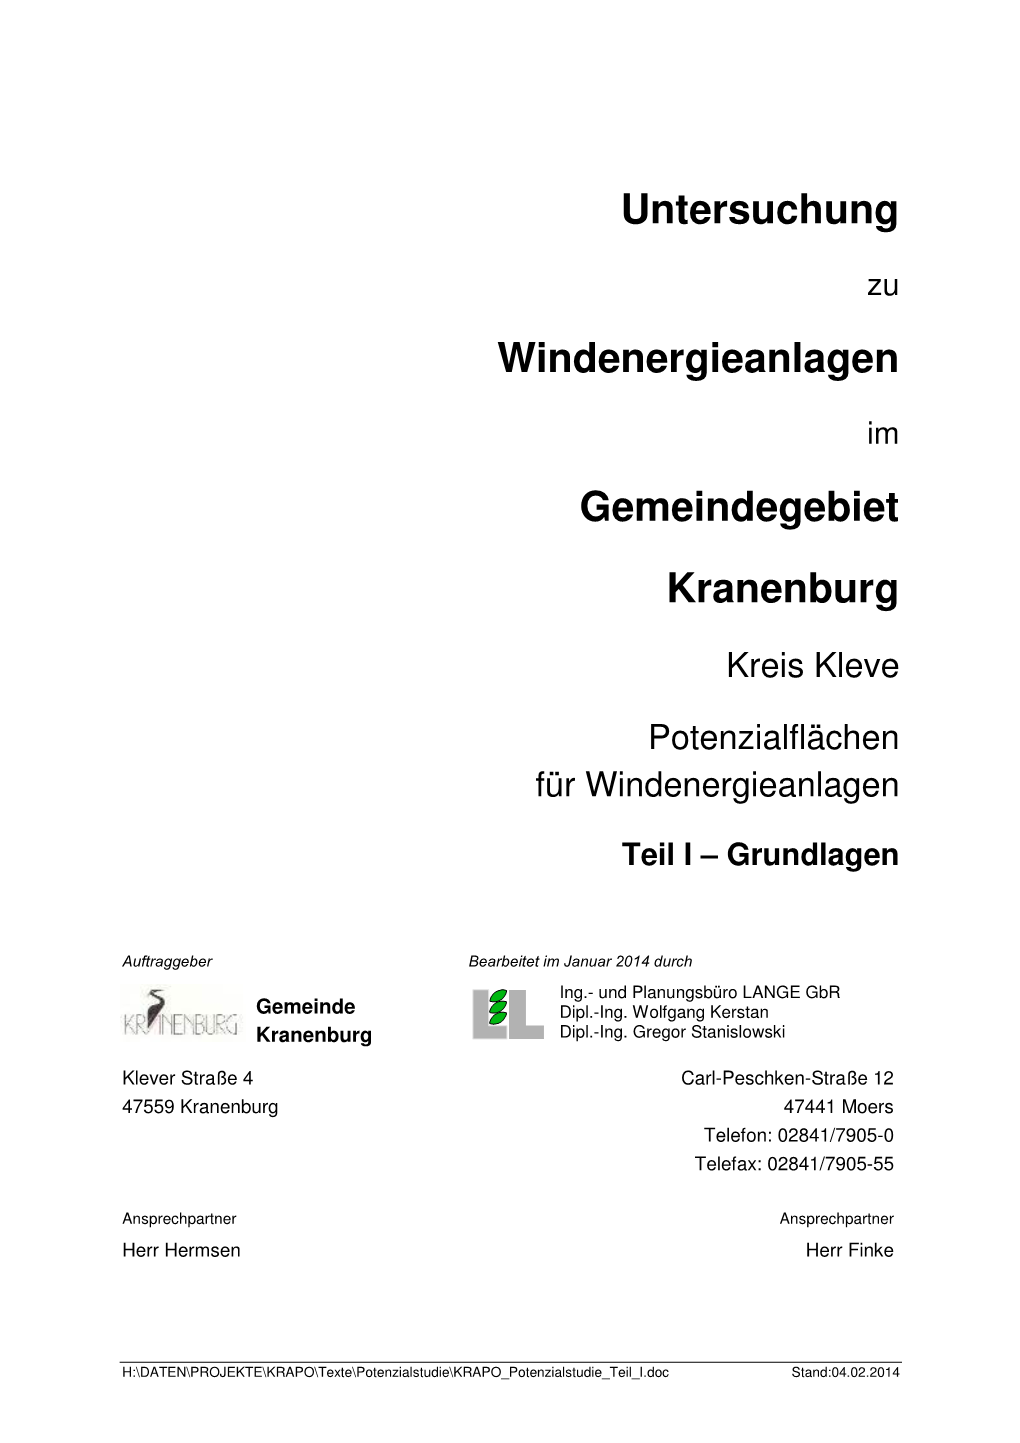 Untersuchung Windenergieanlagen Gemeindegebiet Kranenburg